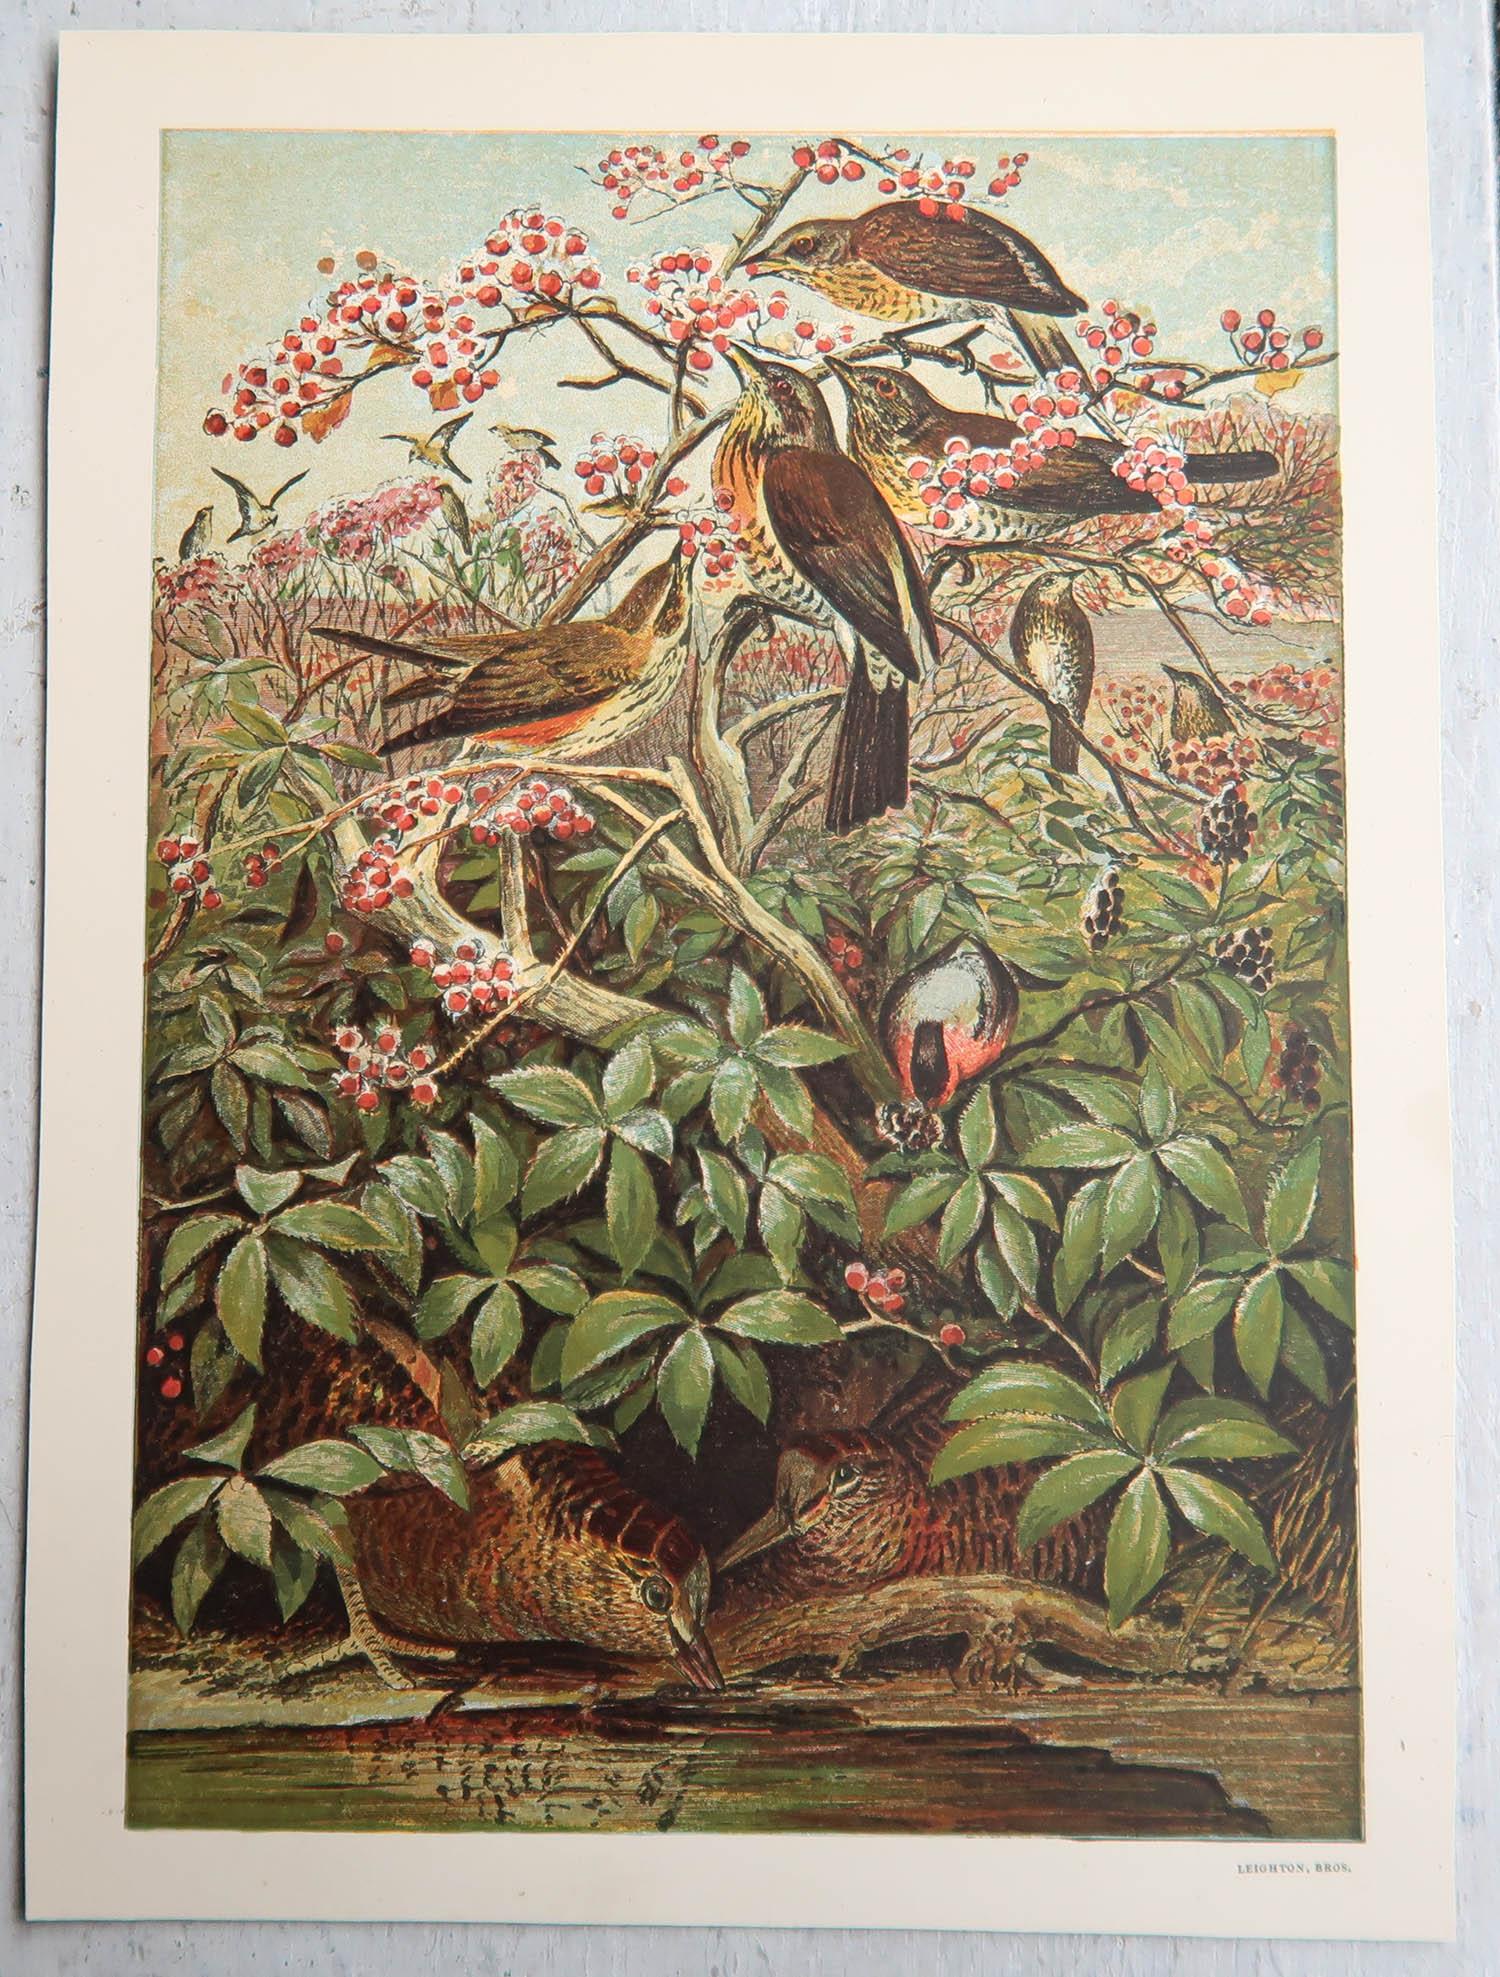 Wunderschöner Satz von 6 Vogeldrucken.

Herrlich leuchtende Farben.

Chromolithografien der Gebrüder Leighton

Veröffentlicht um 1880

Ungerahmt.

Das angegebene Maß ist die Papiergröße eines Ausdrucks.